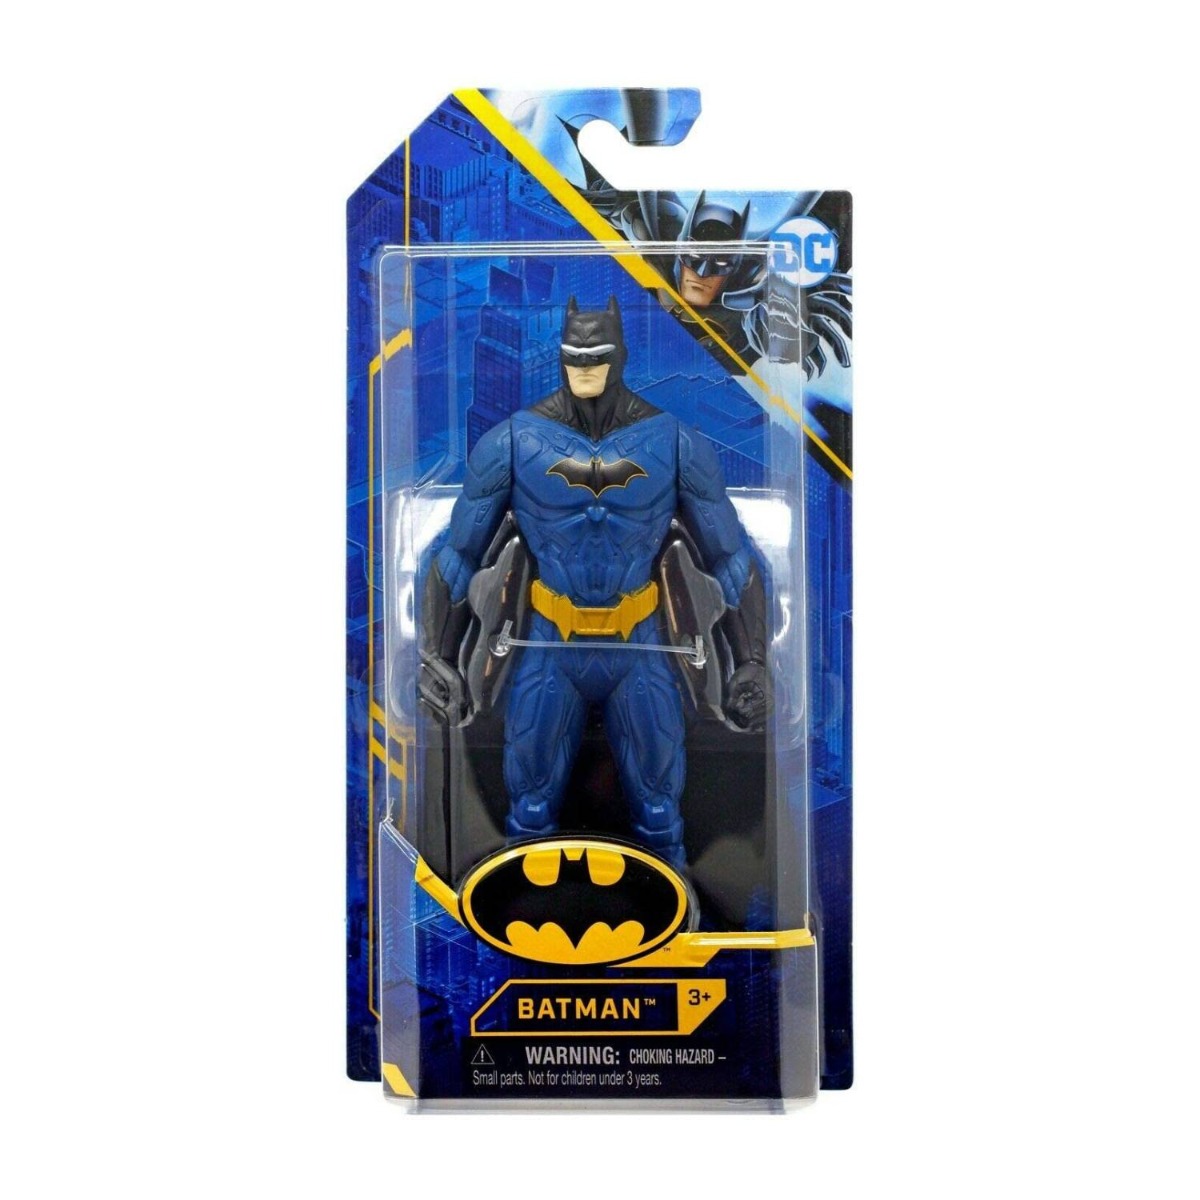 Figurina articulata Batman, 15 cm, 20130942